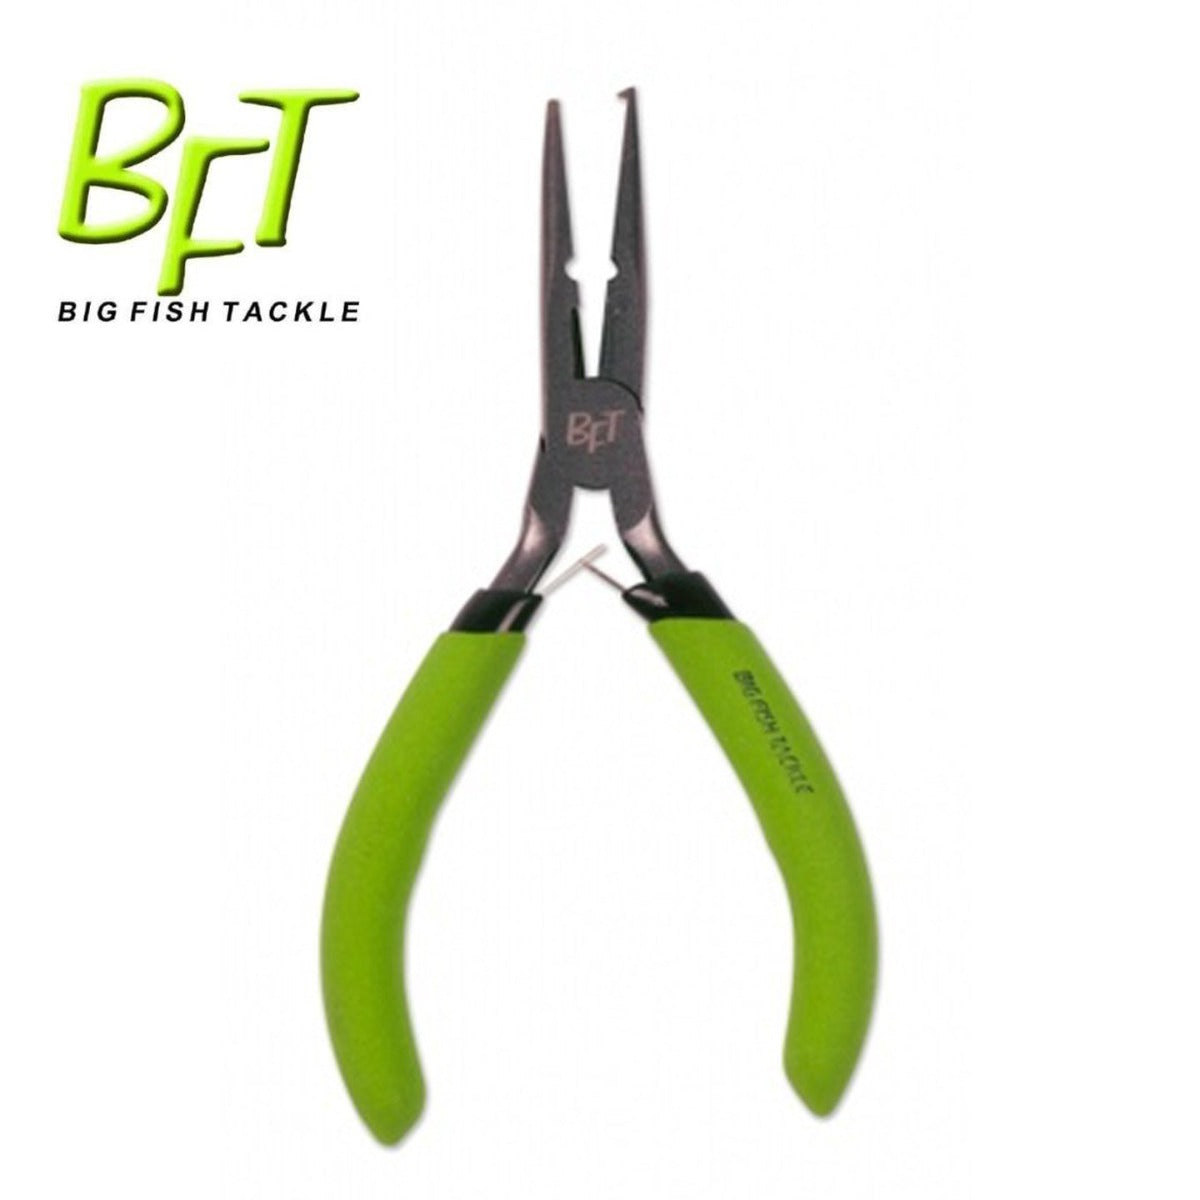 BFT Mini Split Ring Pliers + Cutter